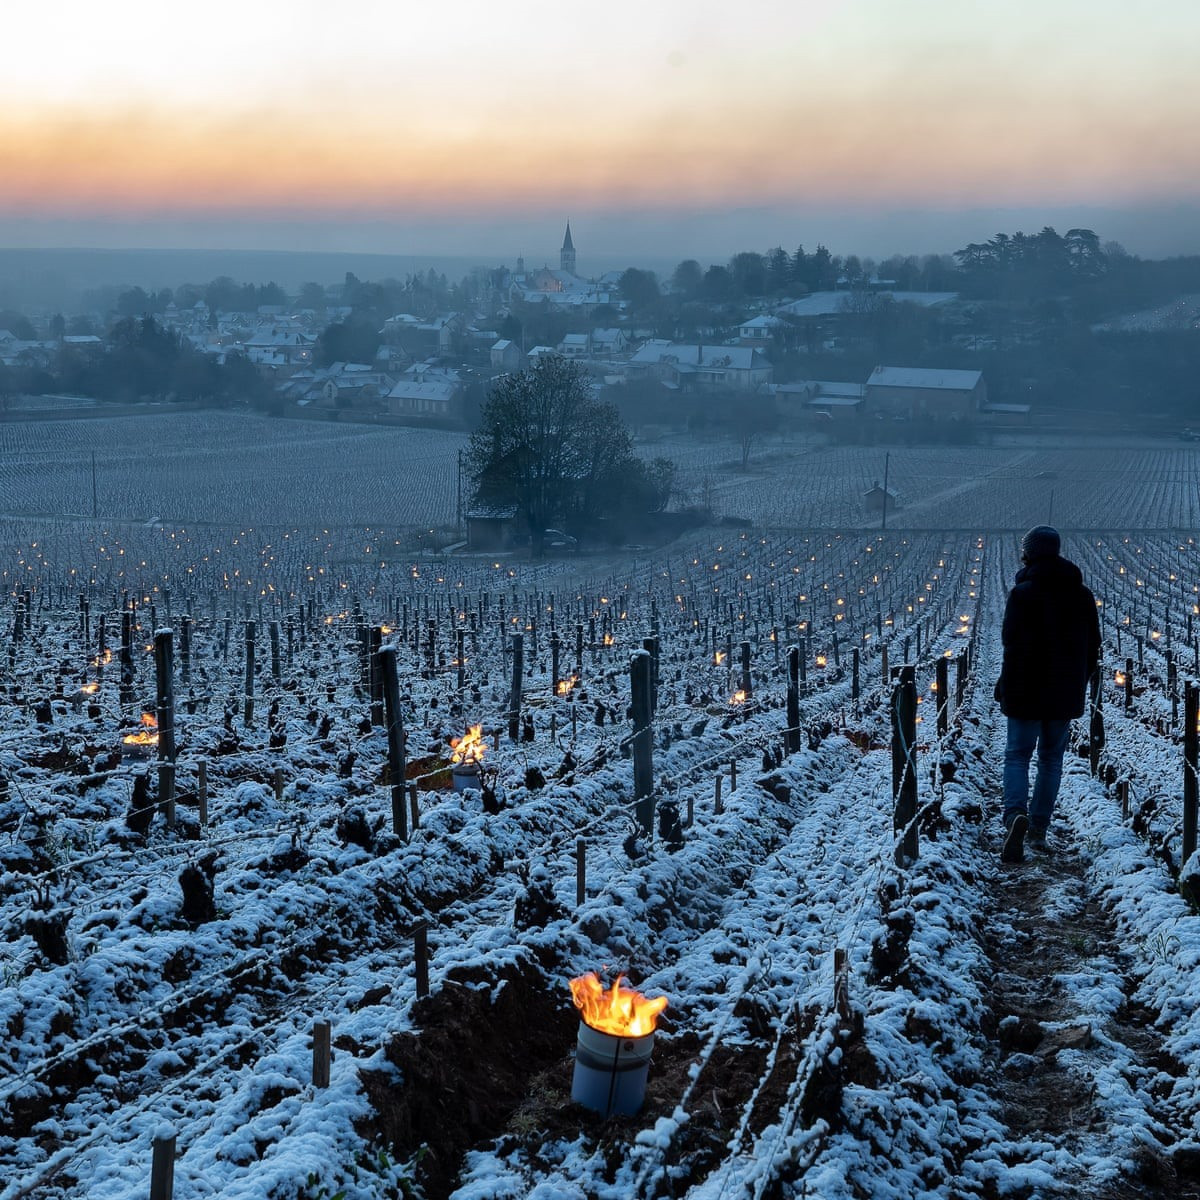 Nông dân tại Pháp phải sưởi ấm cho các vườn nho để cứu lây vụ mùa trong điều kiện thời tiết băng giá khắc nghiệt. Ảnh: Shutterstock